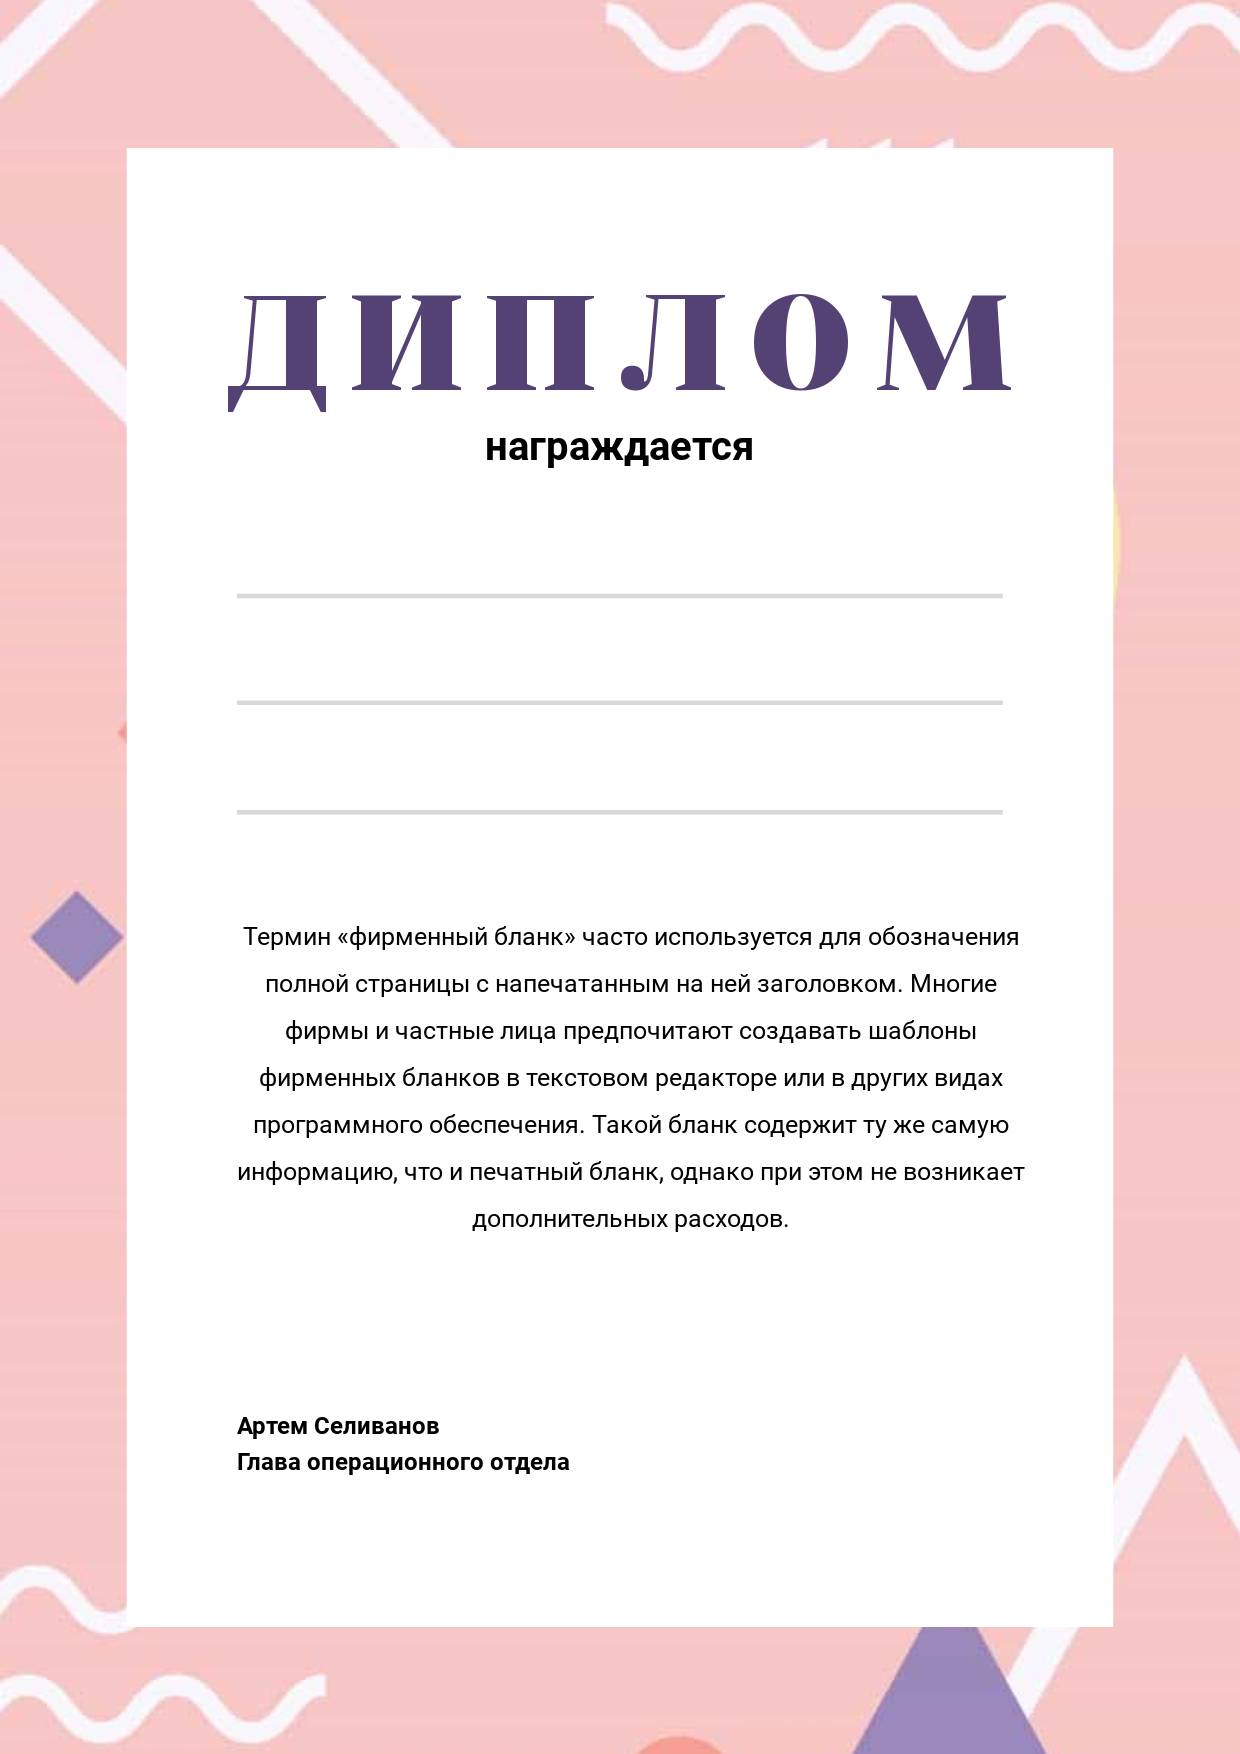 Зефирный розовый шаблон диплома для награждения с абстрактными рисунками на фоне и фиолетовым шрифтом